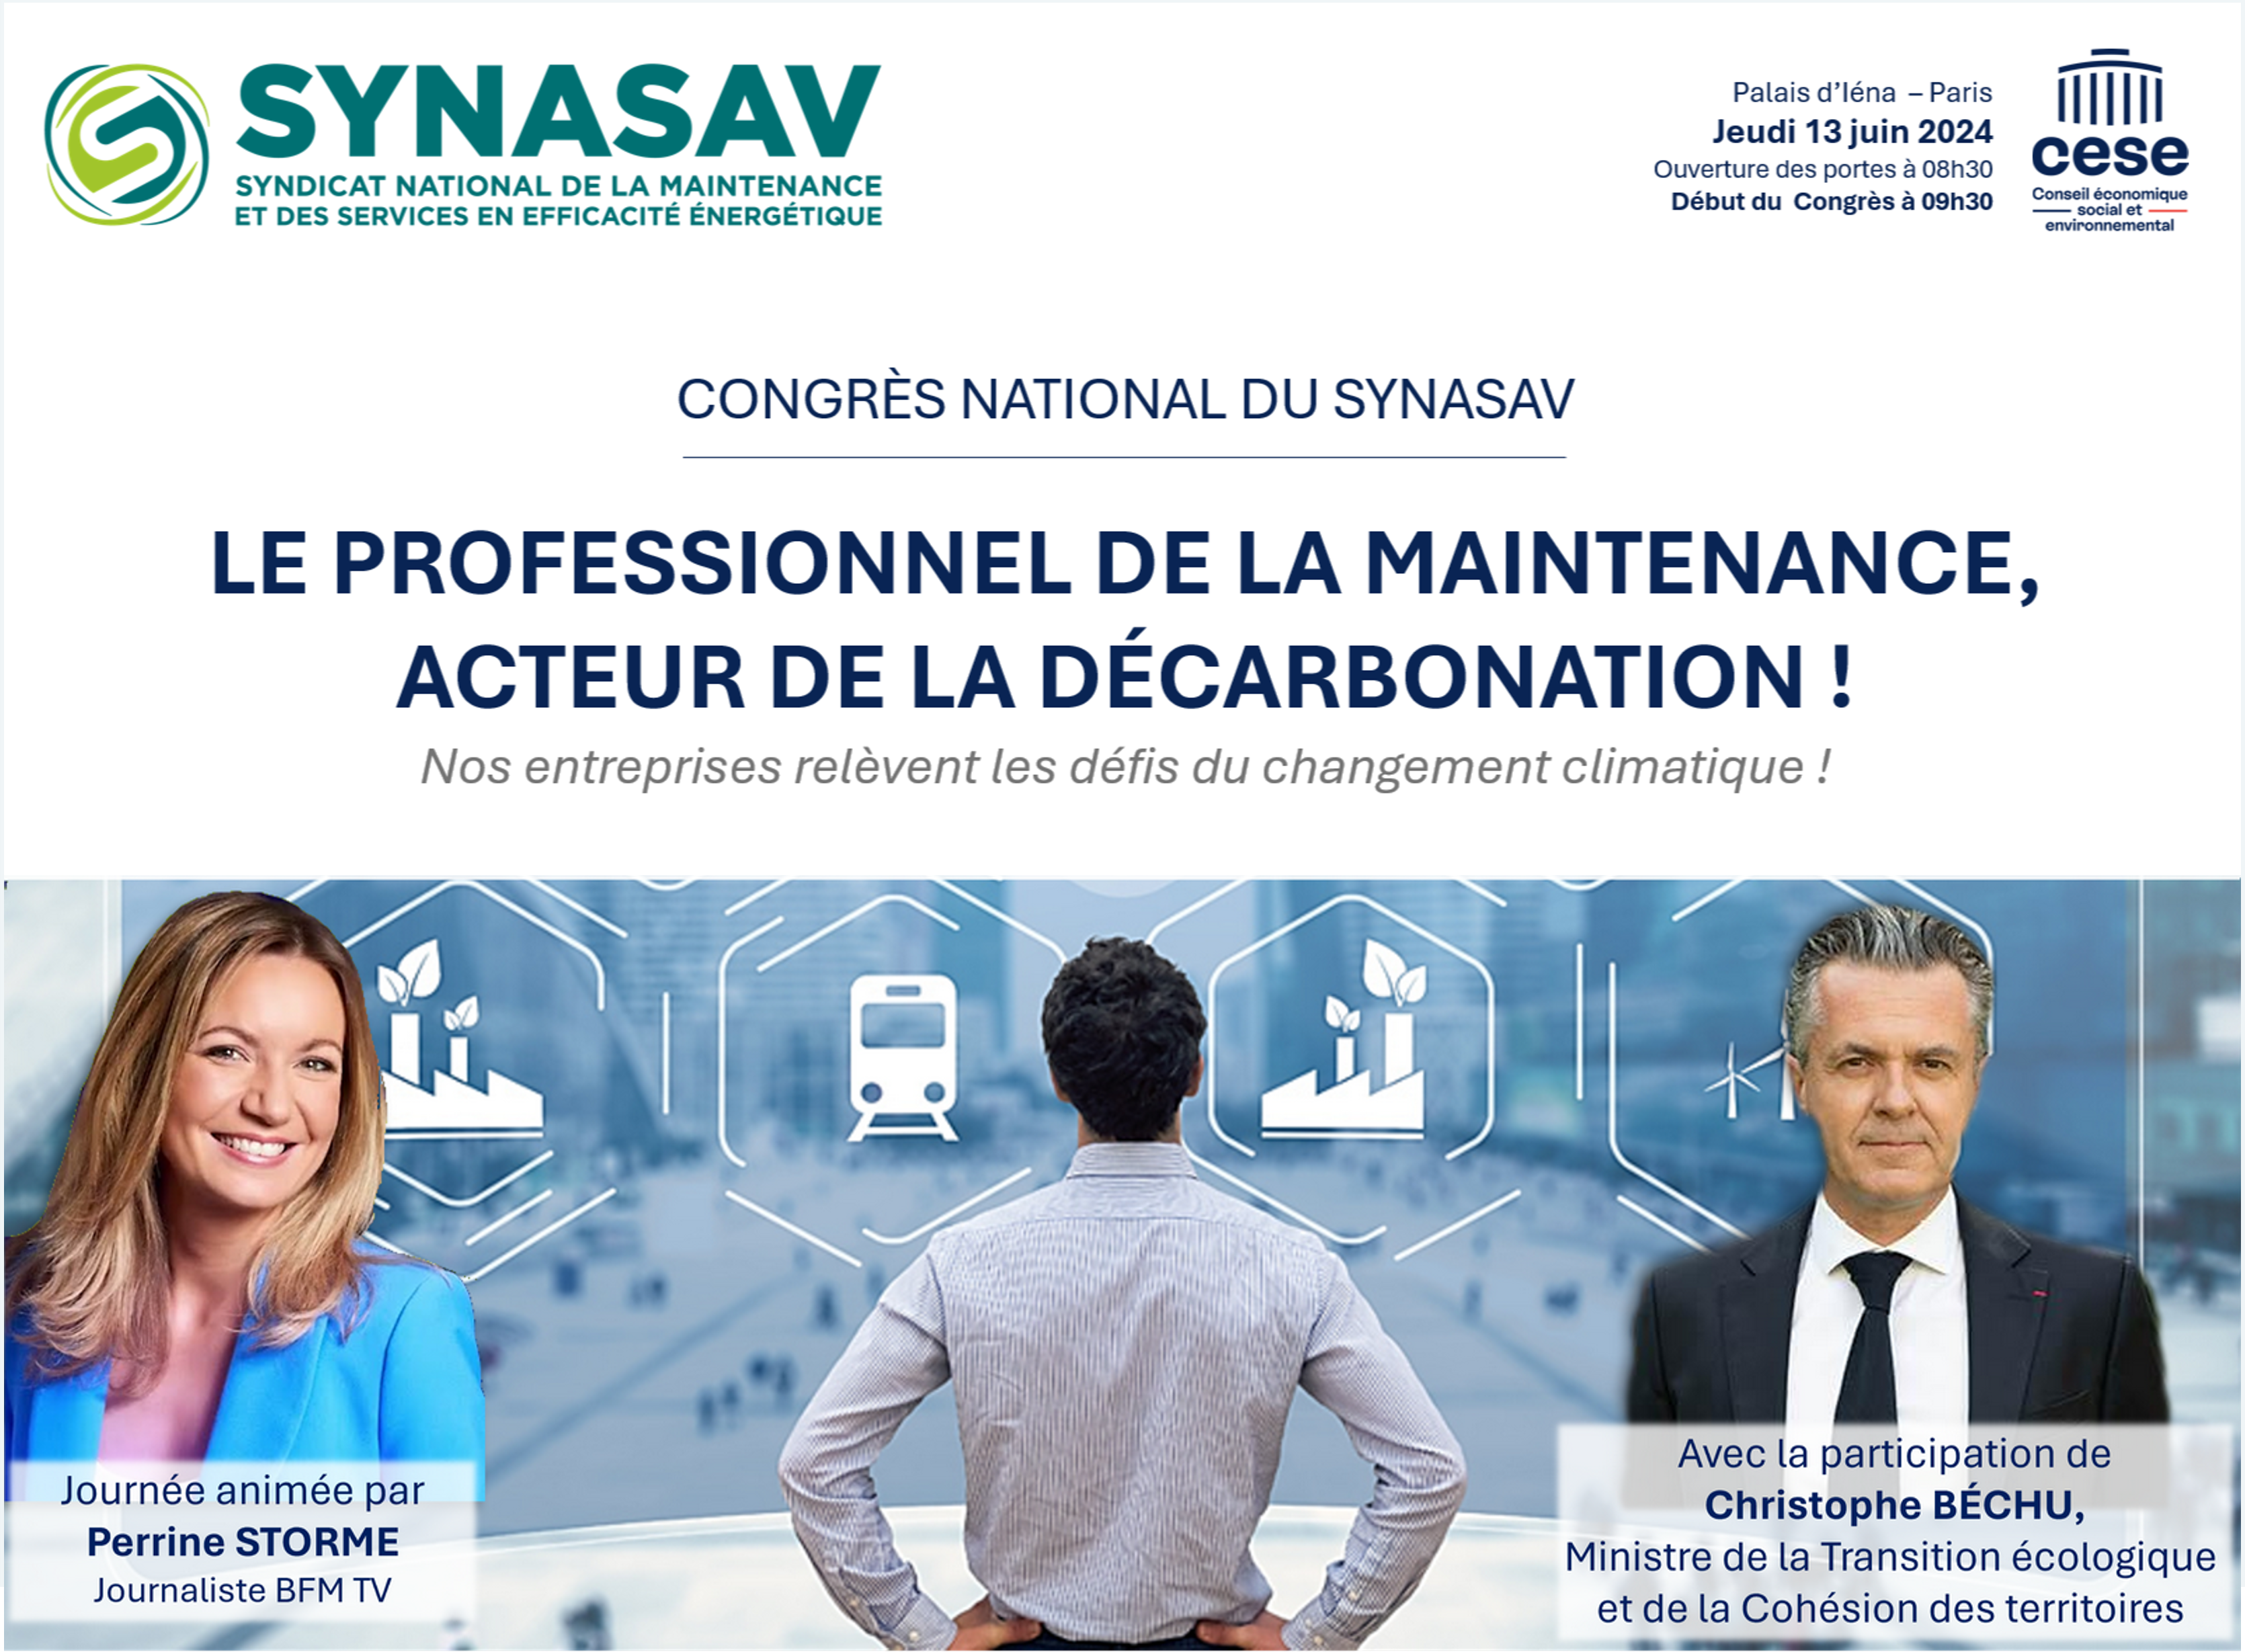 Congrès national du SYNASAV - 13 juin 2024 - Paris - Palais d'Iéna